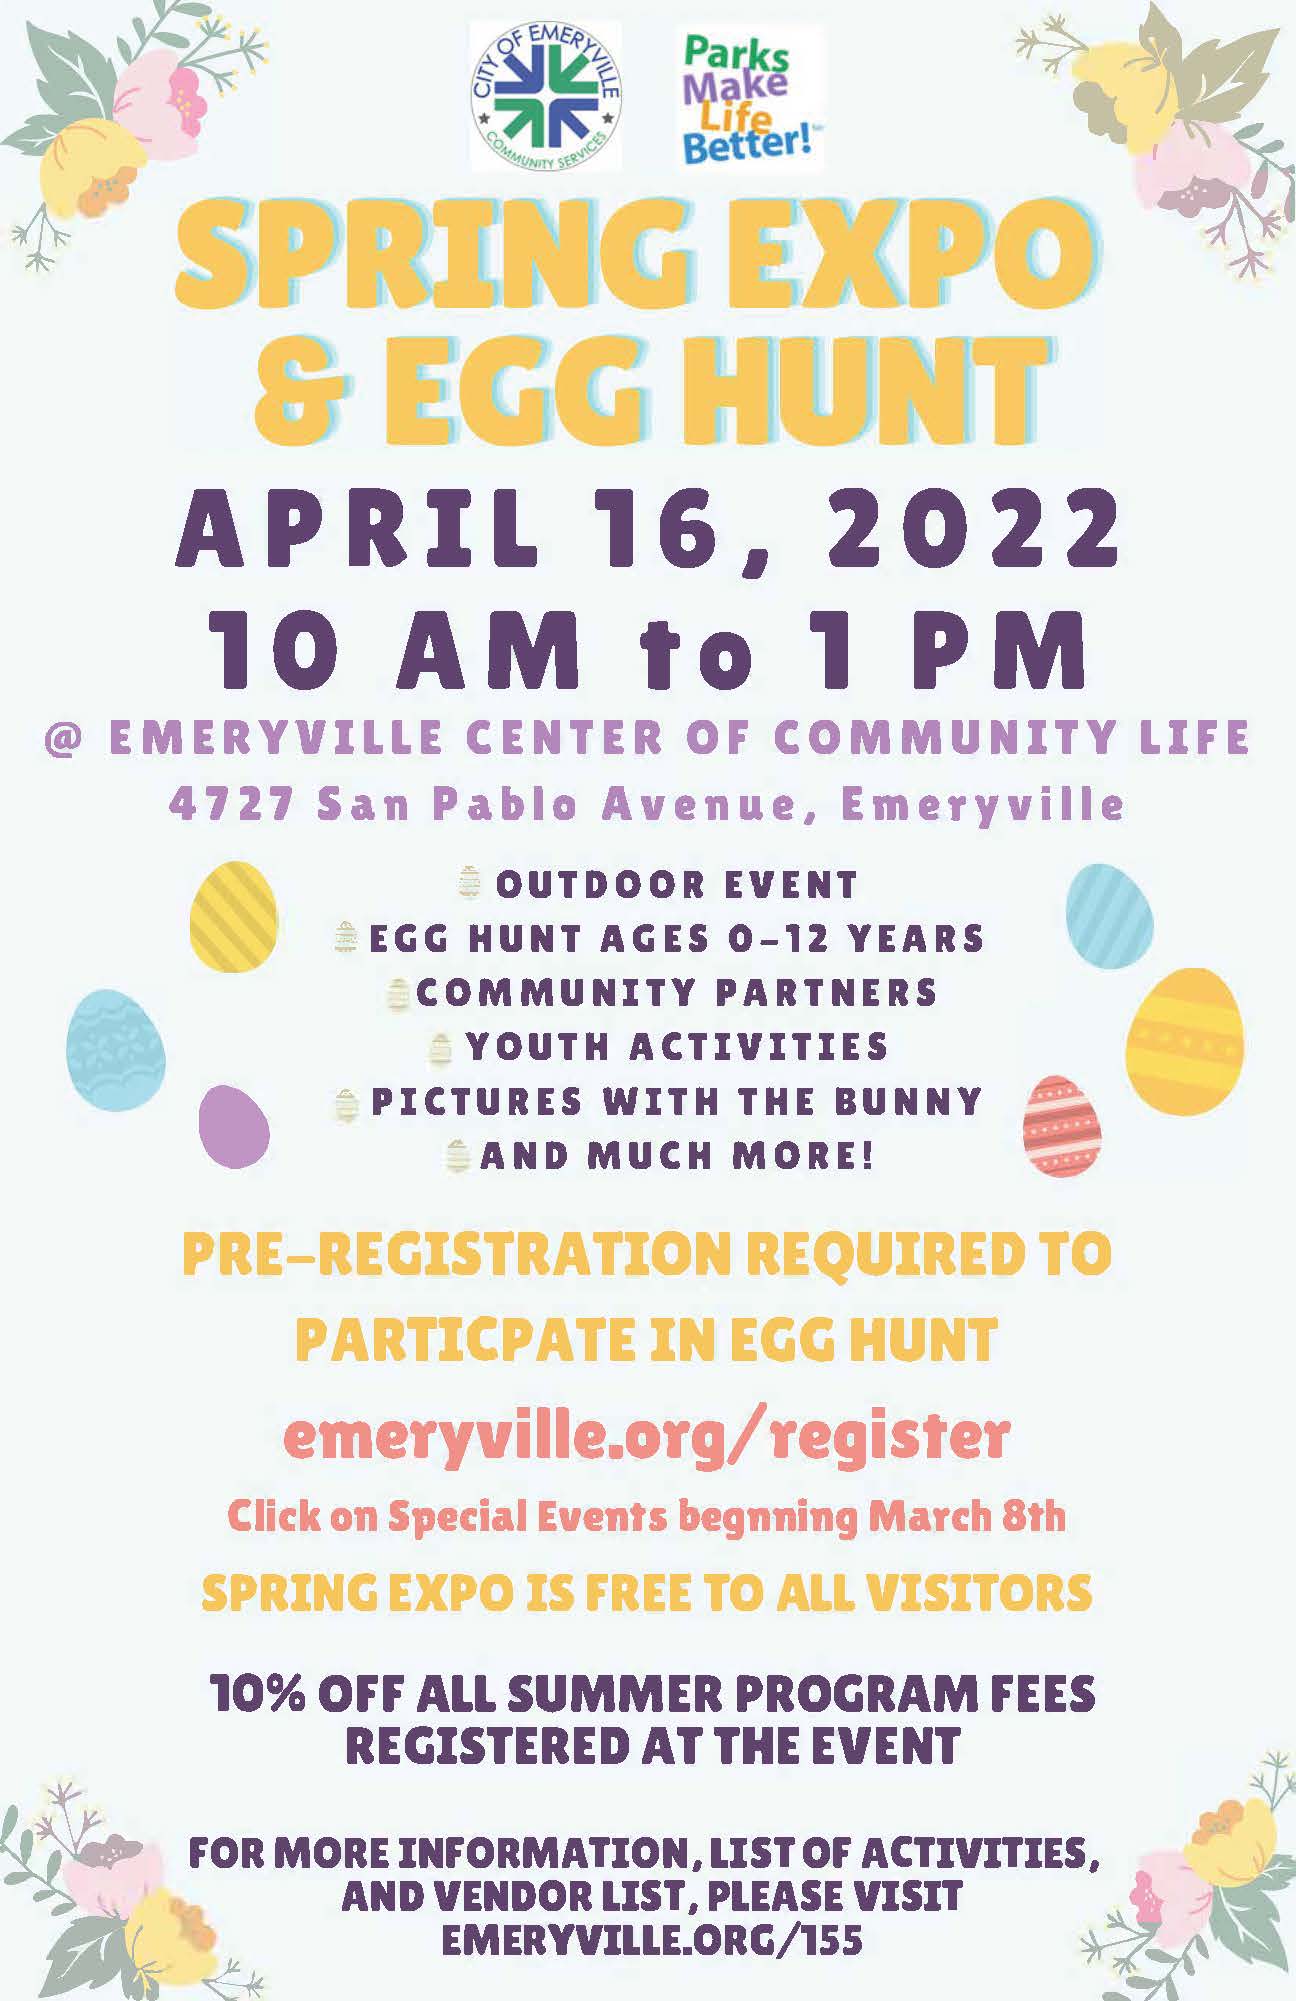 Annual Emeryville Spring Expo & Egg Hunt